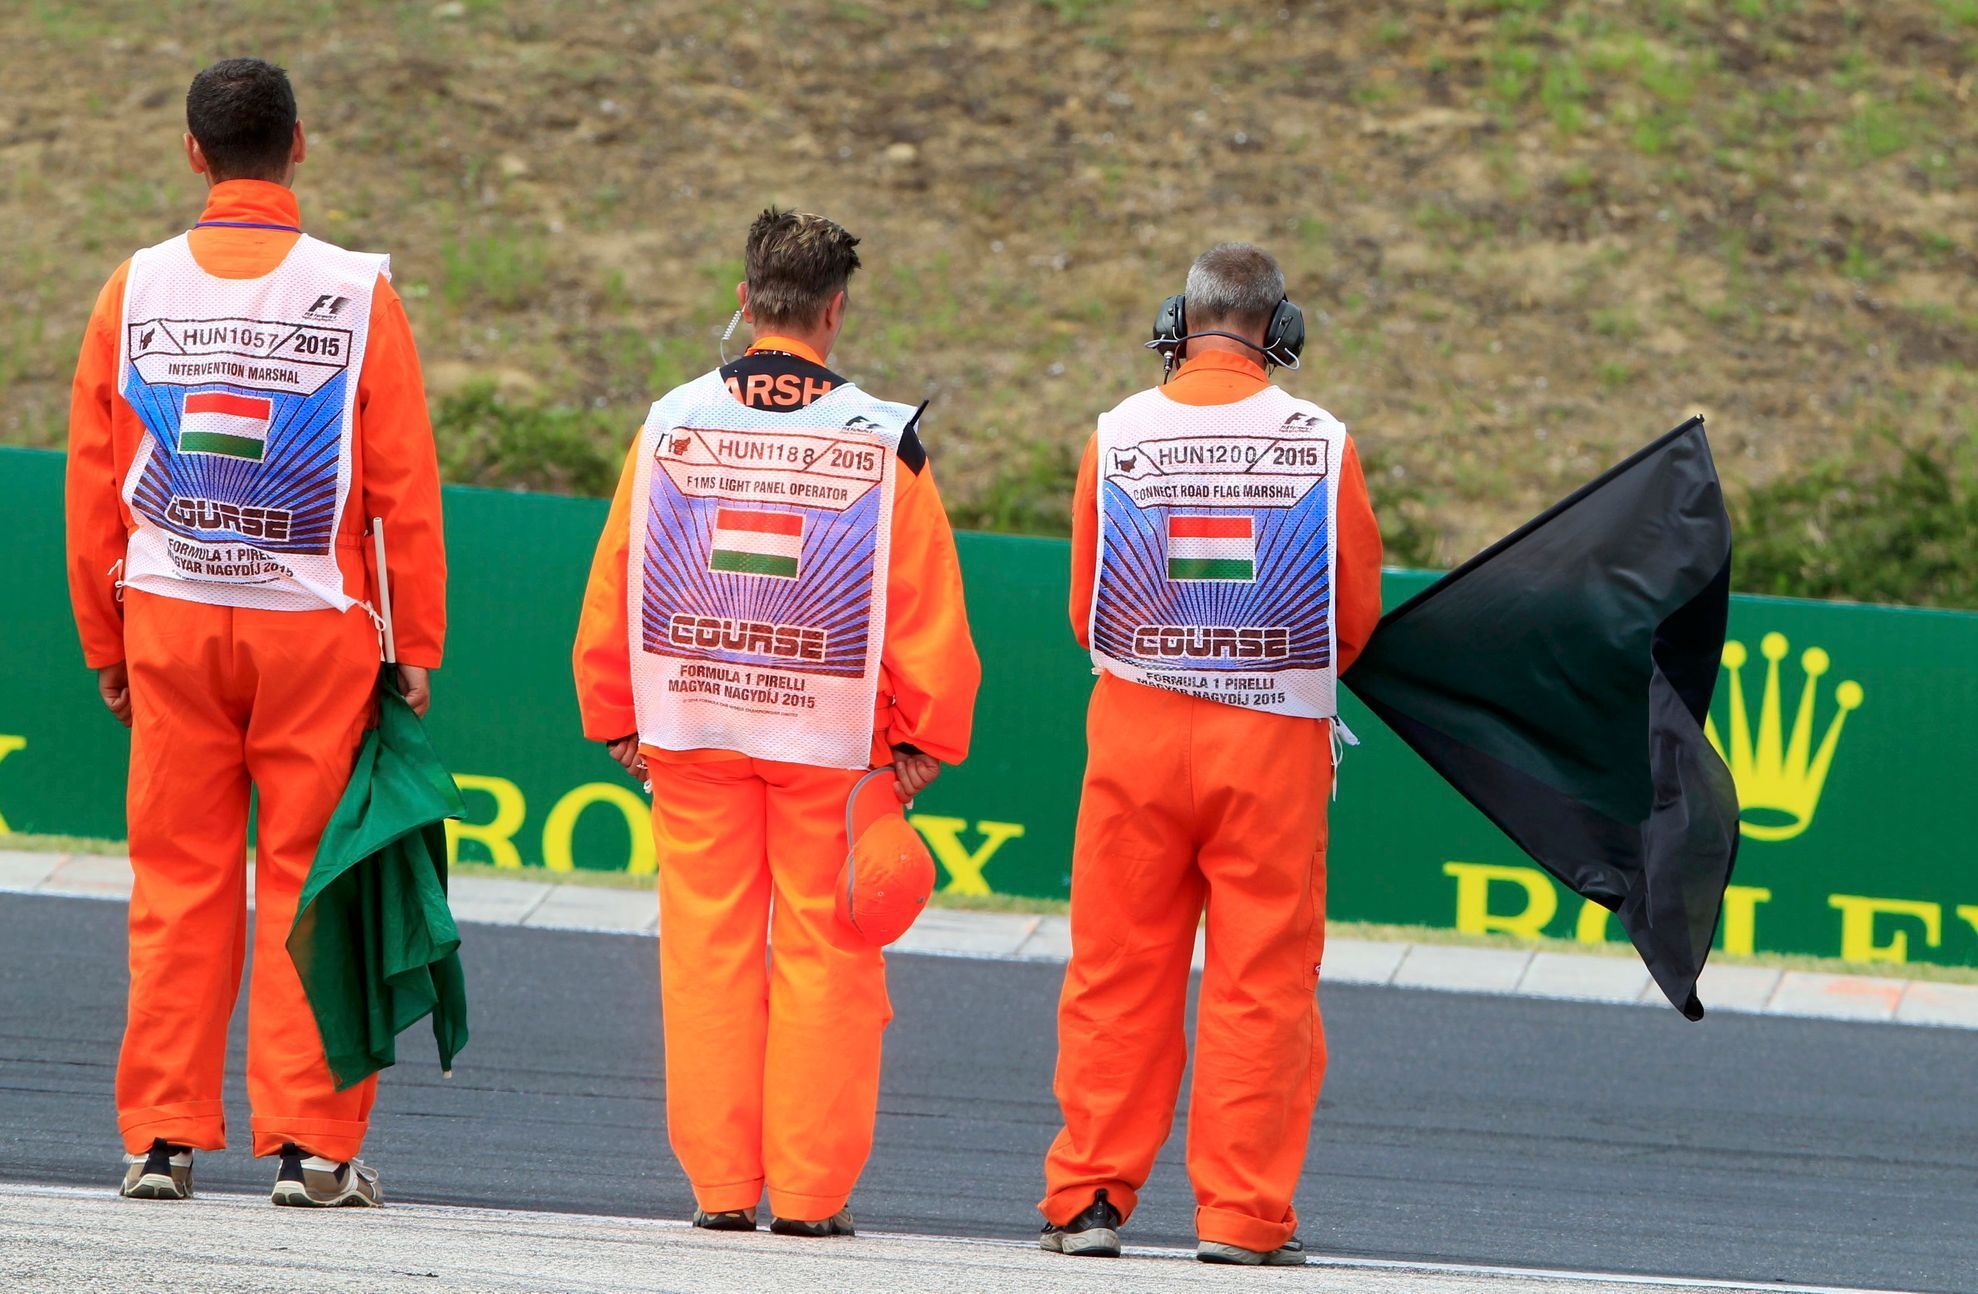 F1, VC Maďarska 2015: minuta ticha za Julese Bianchiho - traťoví komisaři